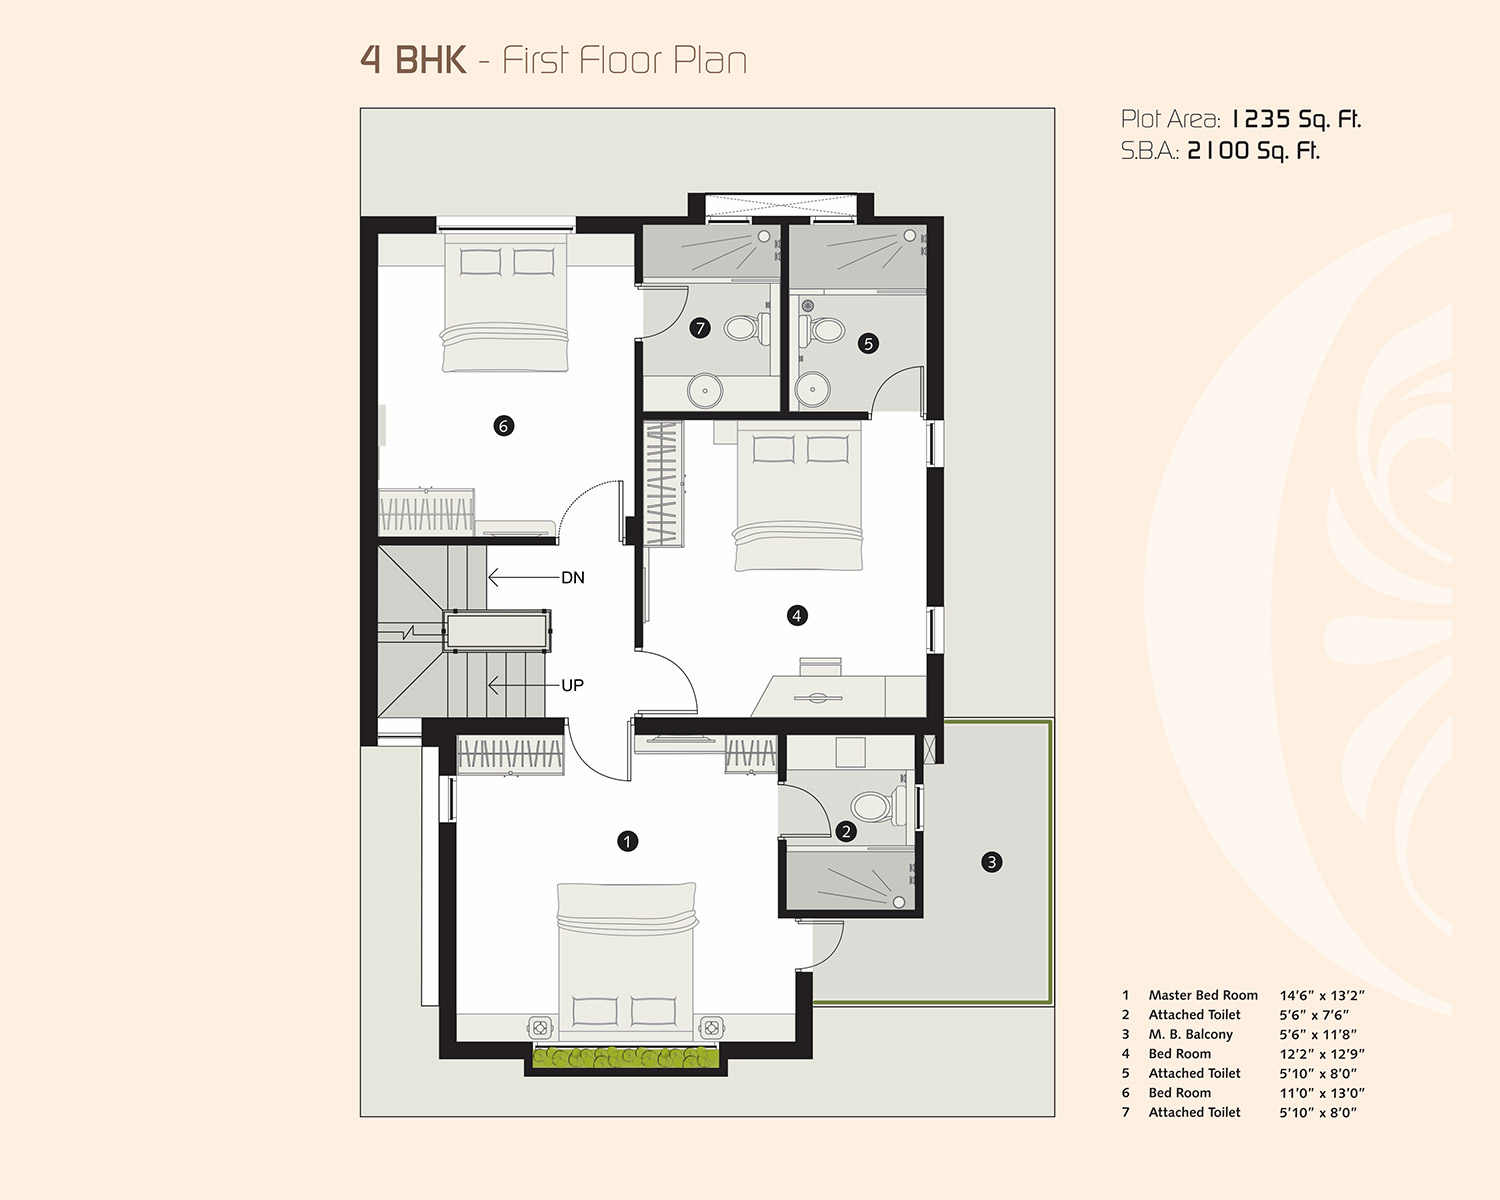 4 BHK First Floor Plan